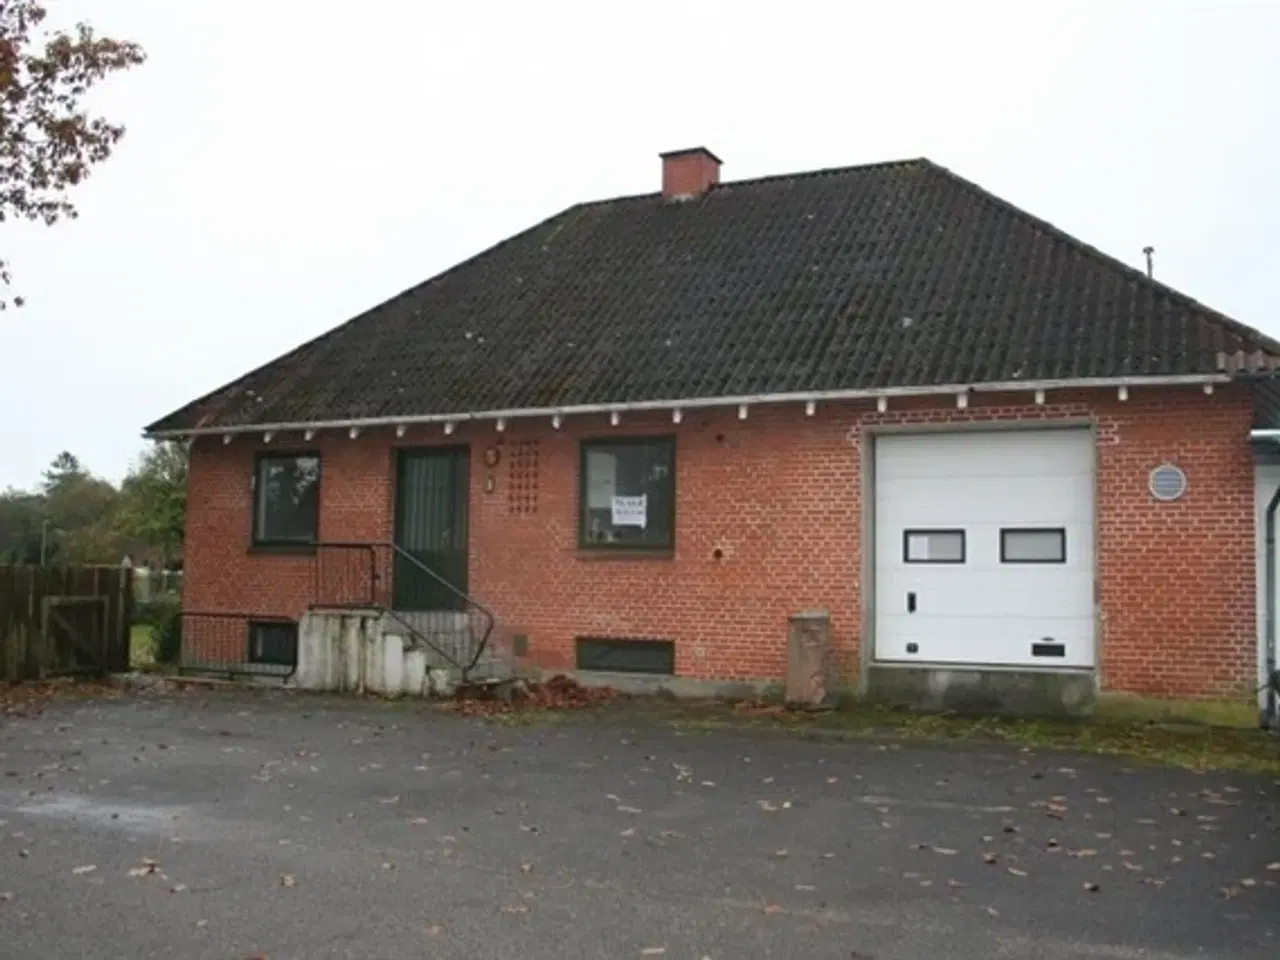 Billede 1 - Villa med kælder i boligstandard., Karup J, Viborg